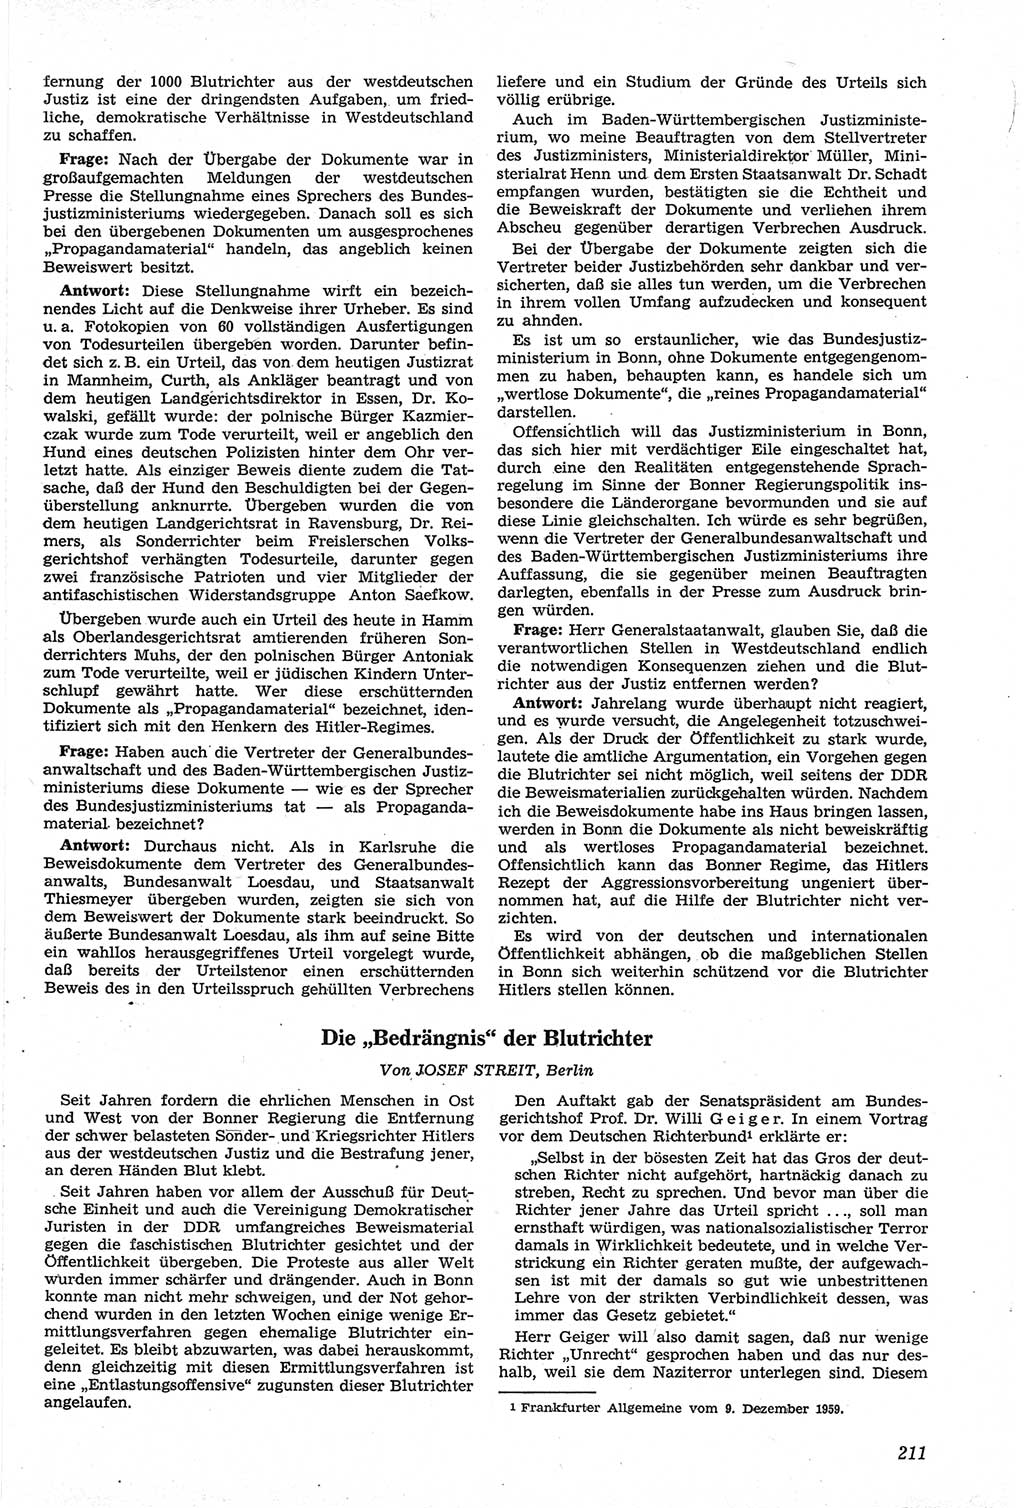 Neue Justiz (NJ), Zeitschrift für Recht und Rechtswissenschaft [Deutsche Demokratische Republik (DDR)], 14. Jahrgang 1960, Seite 211 (NJ DDR 1960, S. 211)